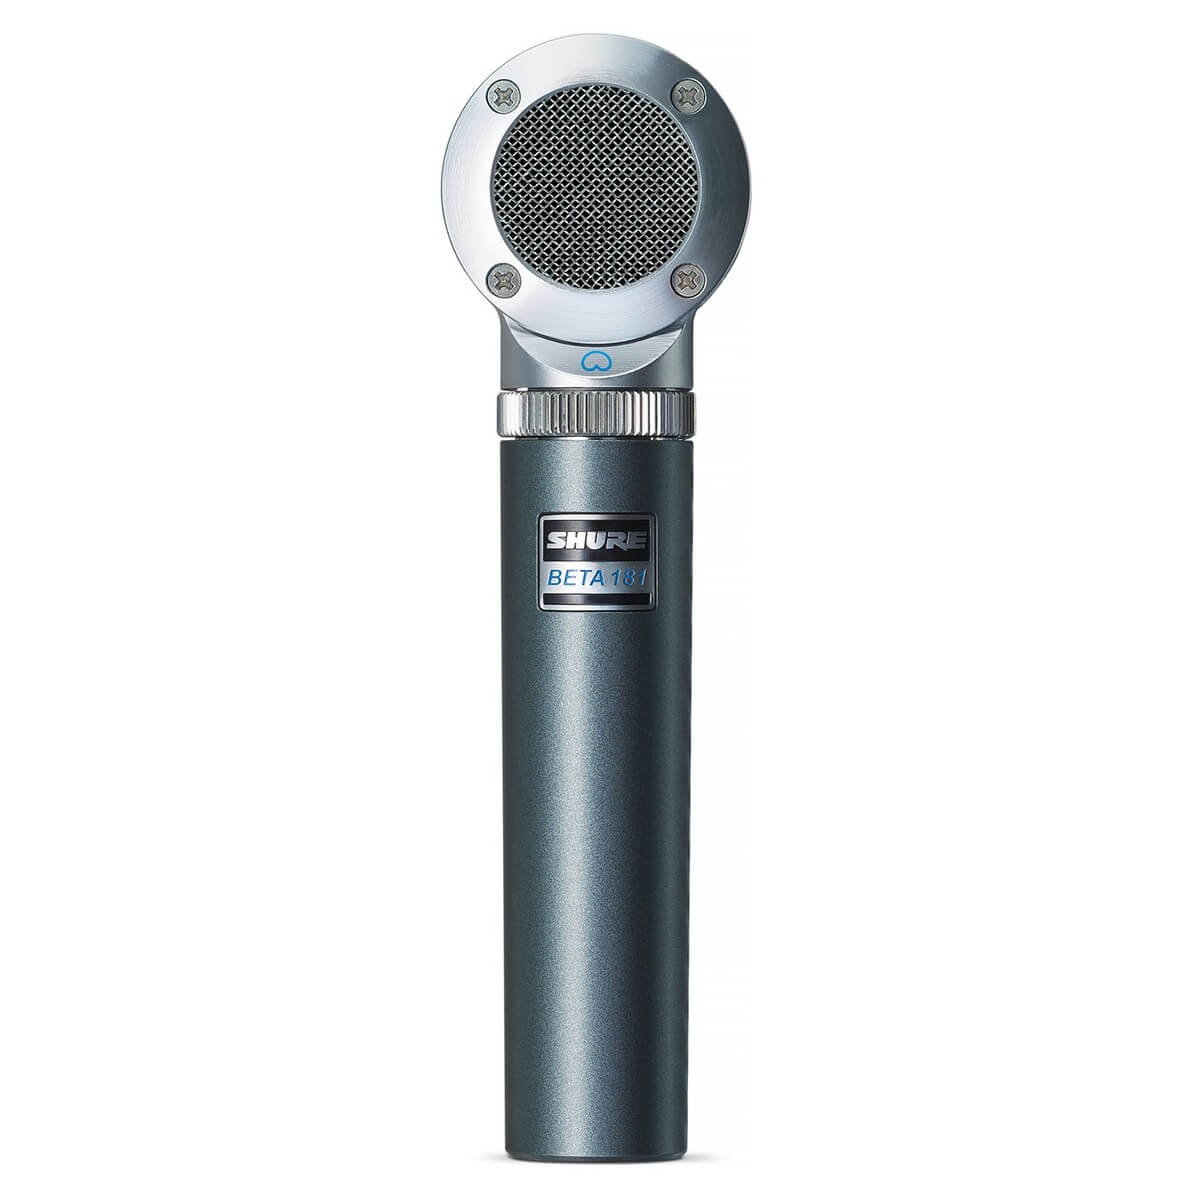 Shure general Shure beta181/s micrófono ultracompacto de captación lateral